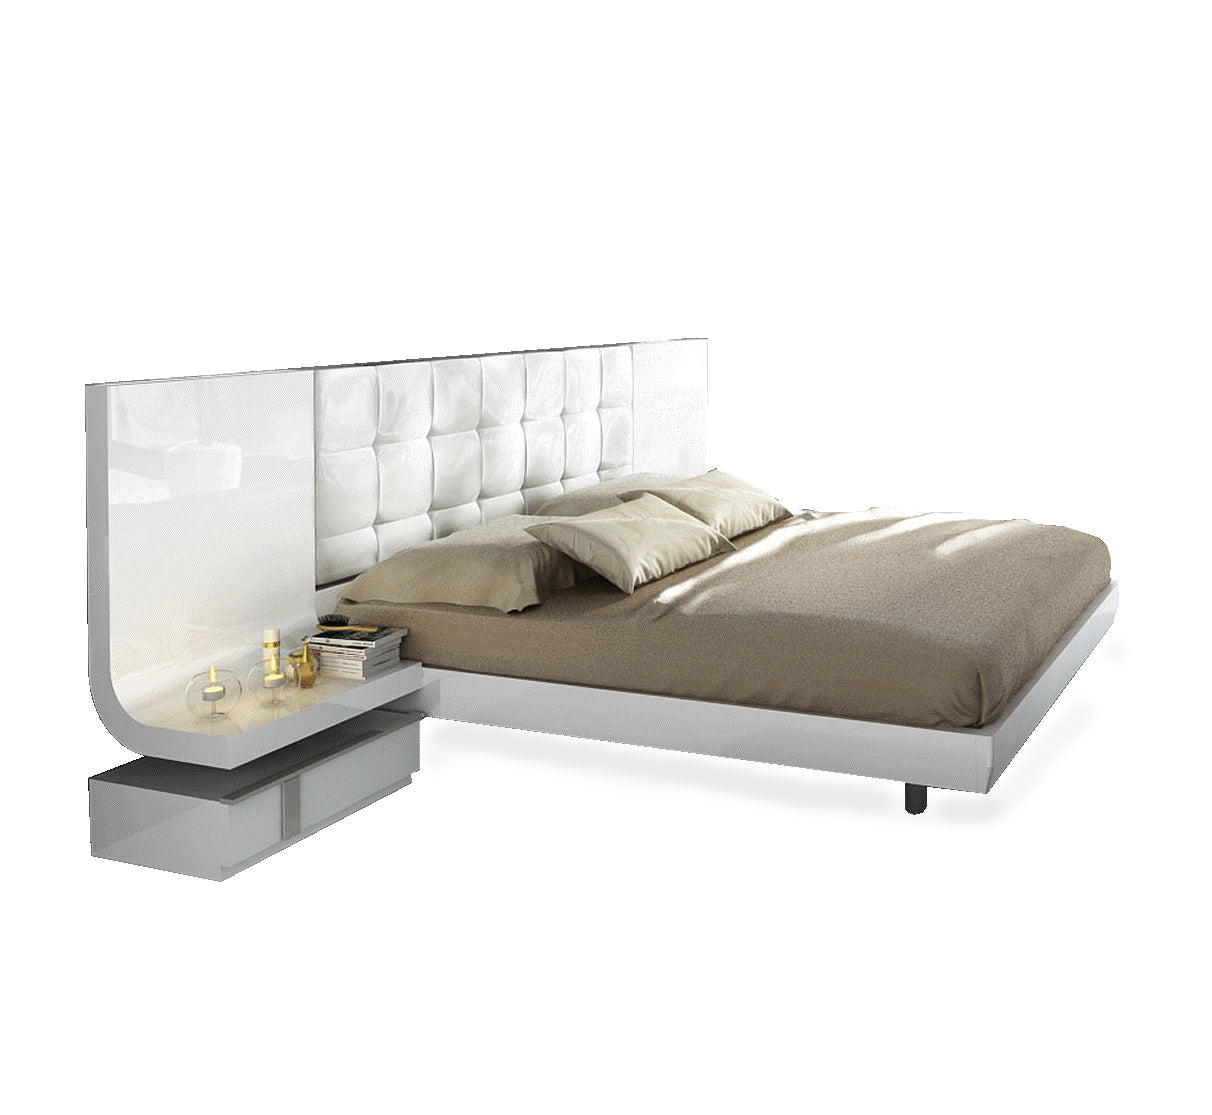 Granada Bed-Beds-Jennifer Furniture